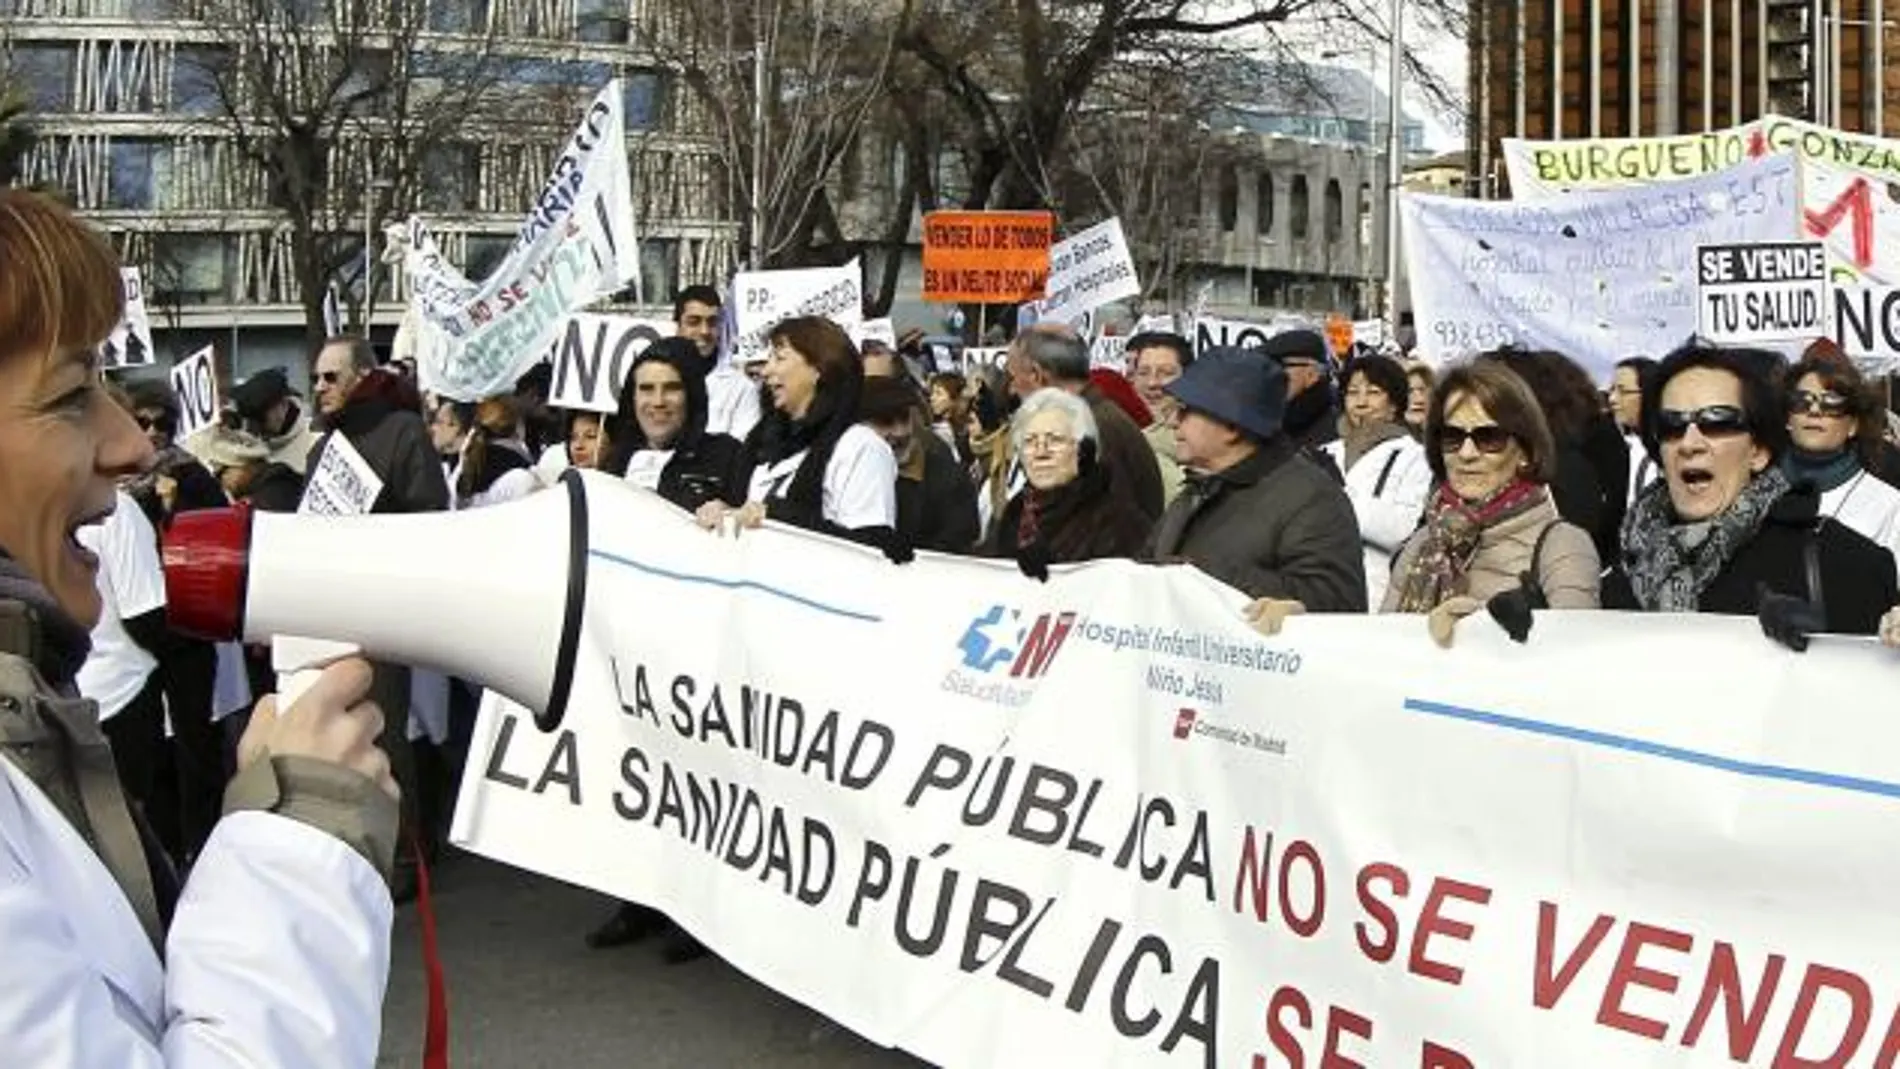 Participantes en la manifestación para protestar contra las privatizaciones de la sanidad, en una imagen de archivo